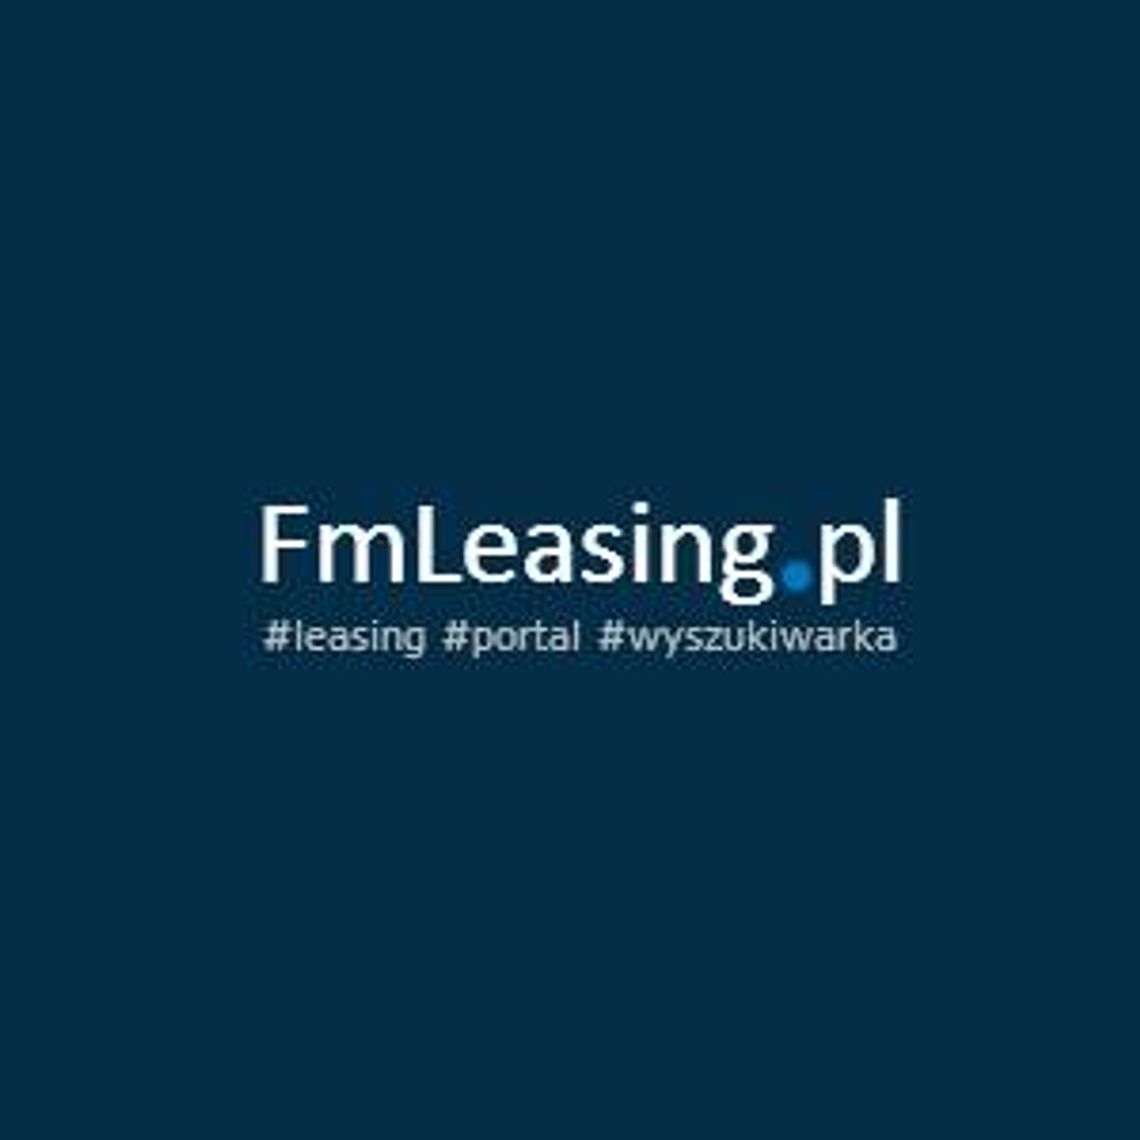 Portal informacyjny i wyszukiwarka leasingu oraz wynajmu długoterminowego - FmLeasing